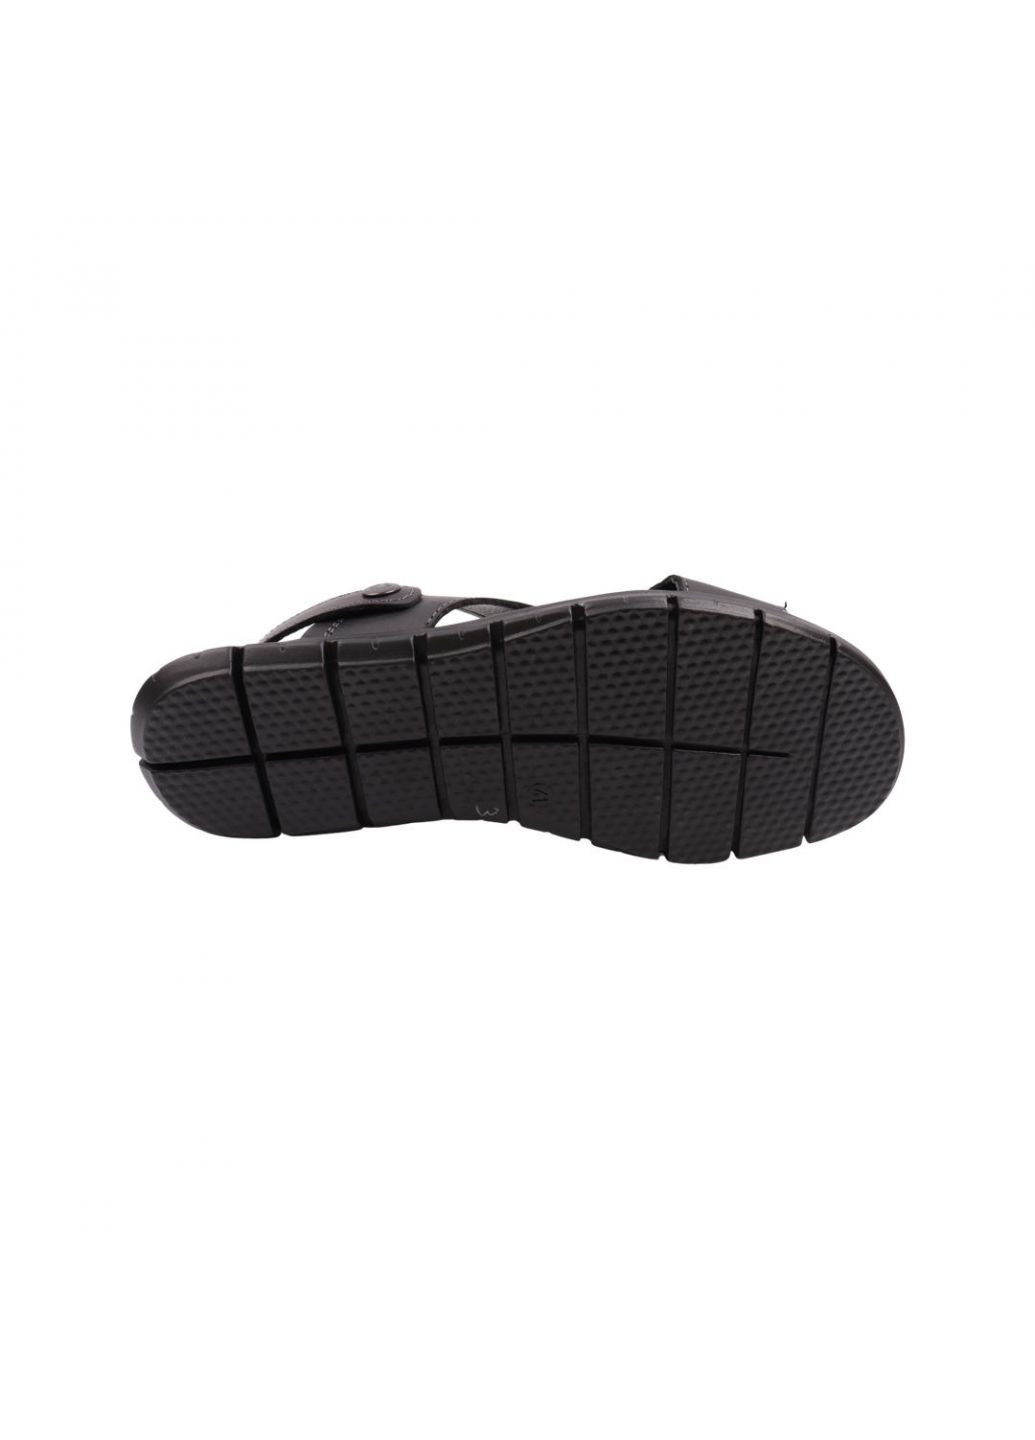 Сандалі чоловічі чорні натуральна шкіра Maxus Shoes 107-22lbc (257443637)